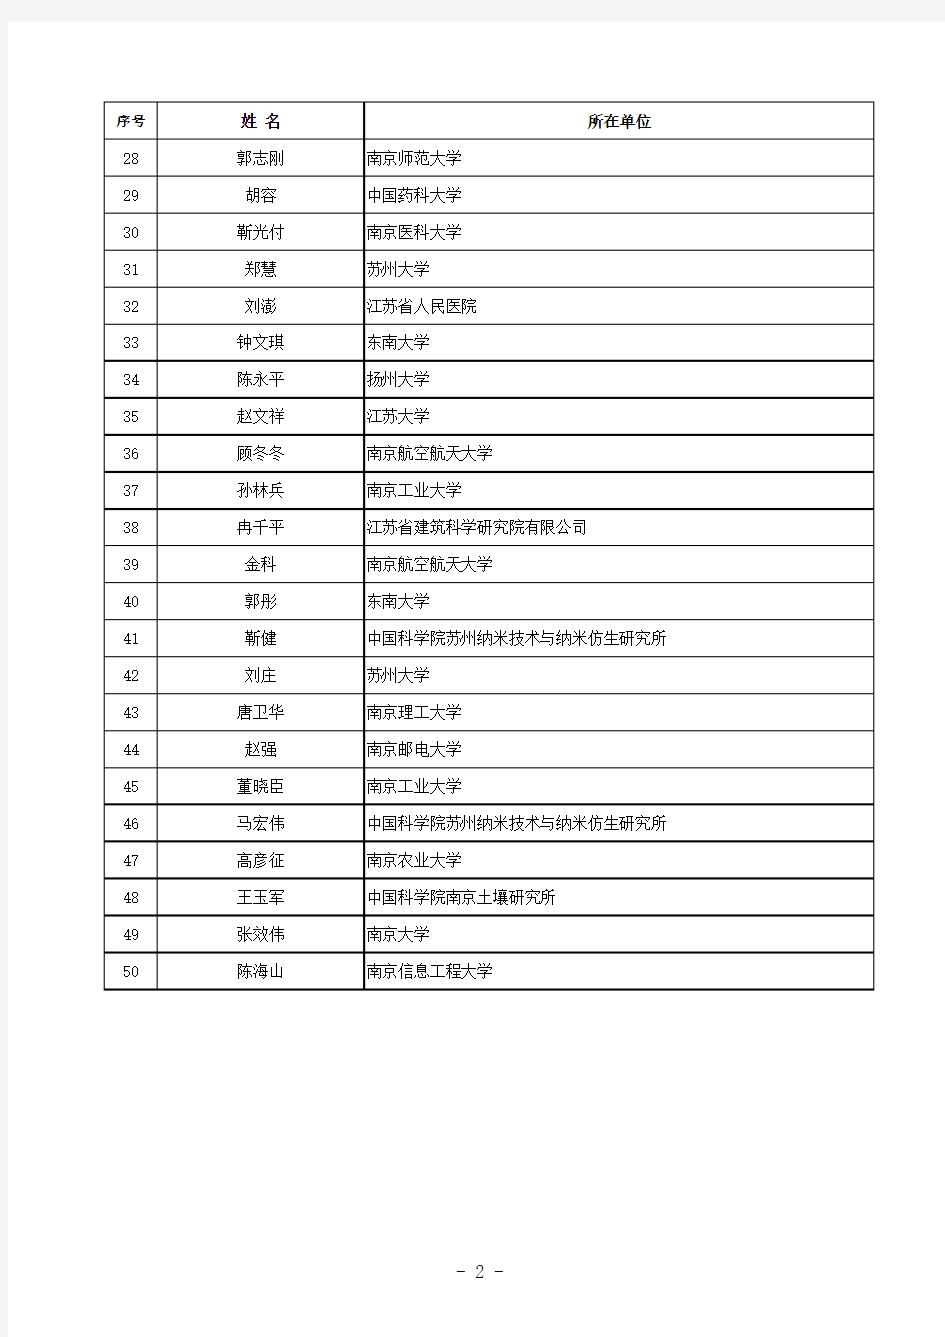 江苏省自然科学基金杰出青年基金获得者名单